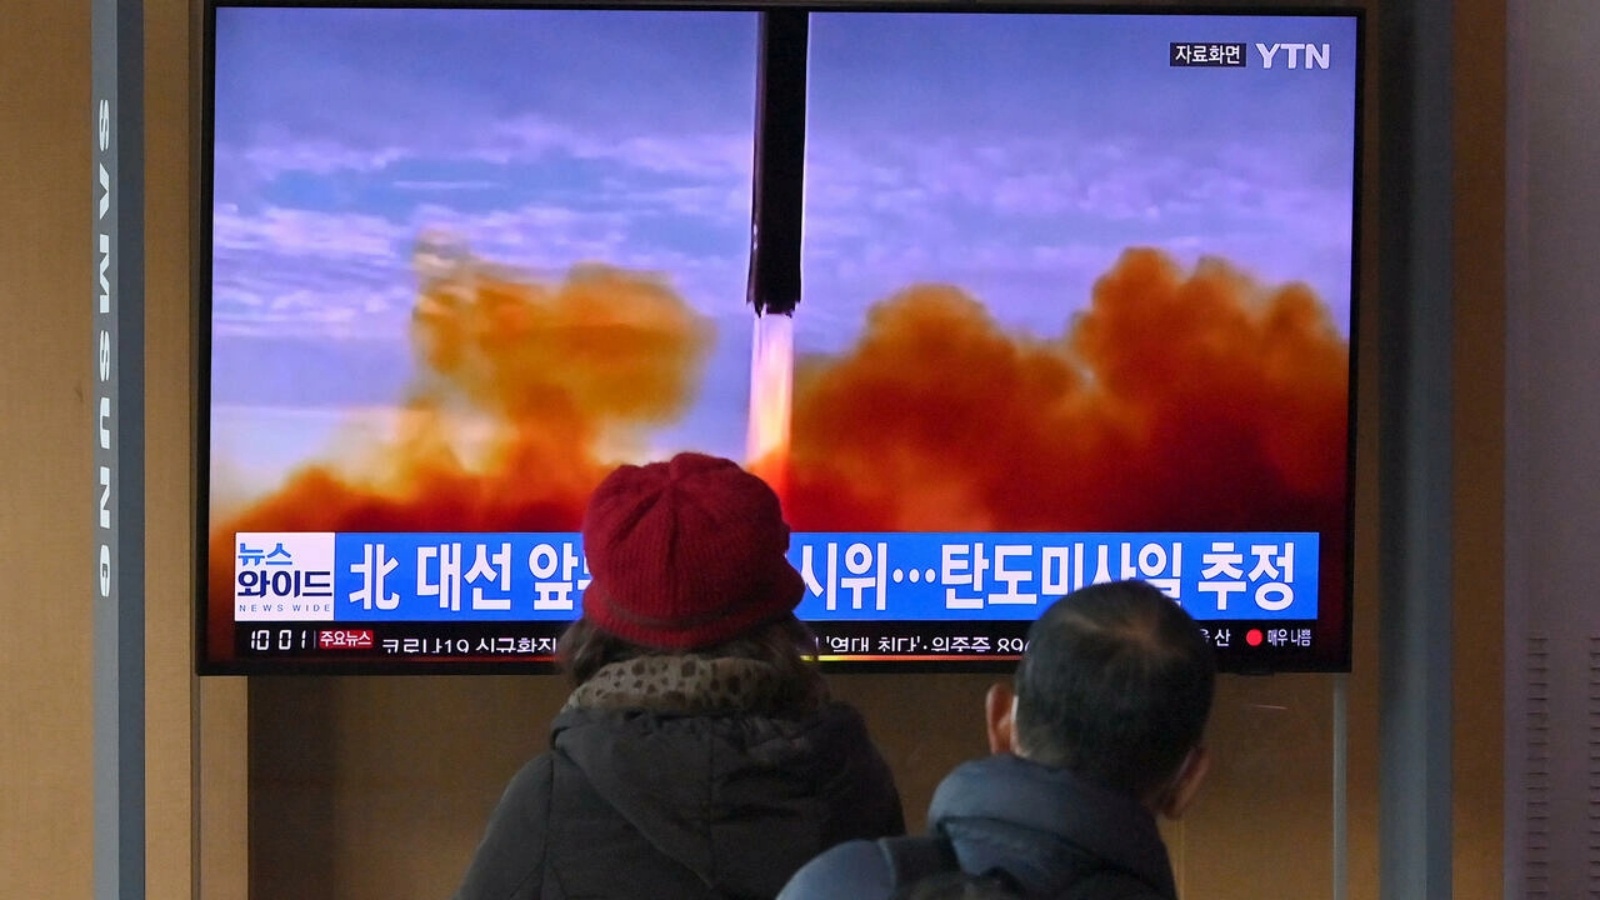 صورة مؤرخة في 5 مارس 2022 لعملية إطلاق صاروخ لكوريا الشمالية على إحدى الشاشات في سيول